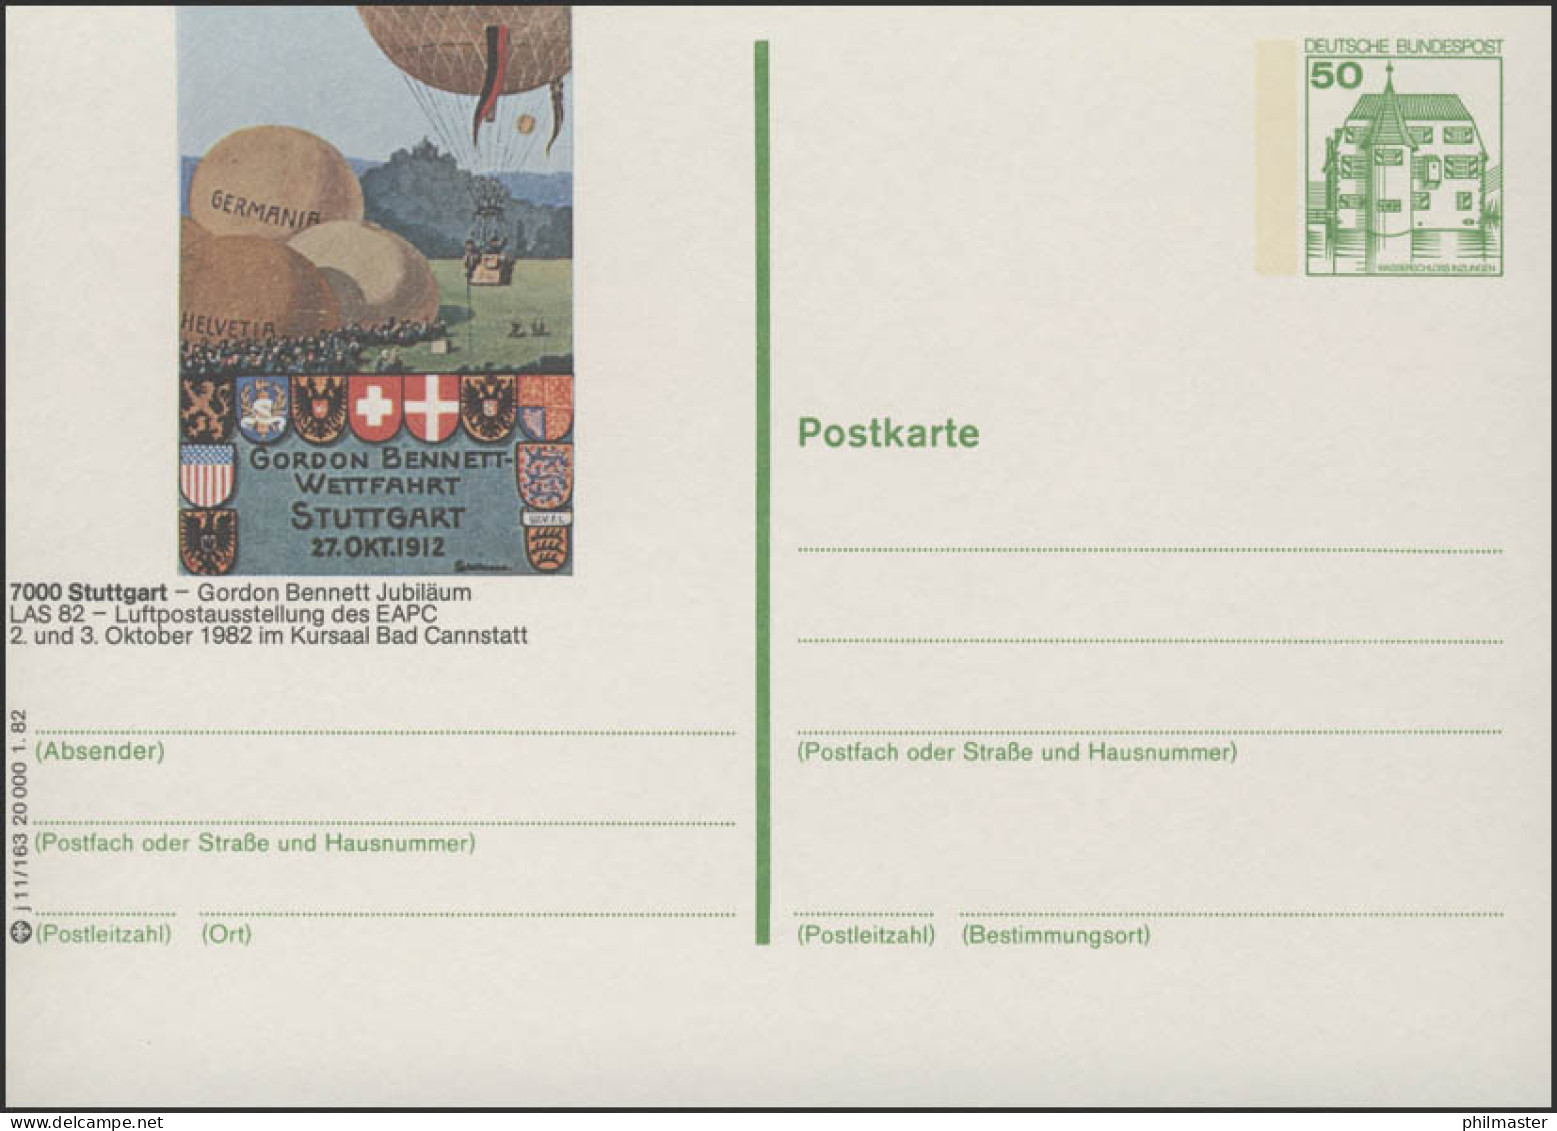 P134-j11/163 - 7000 Stuttgart, Gorden-Benett-Wettfahrt ** - Illustrated Postcards - Mint